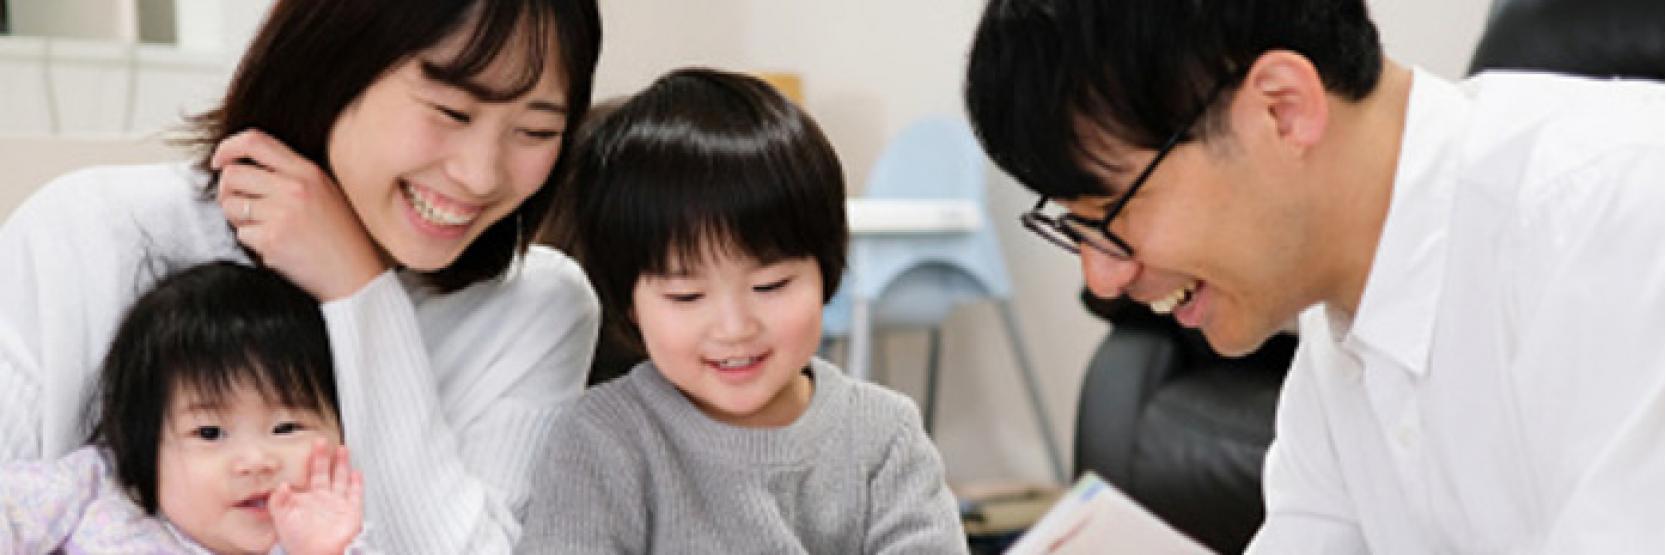 تعلم قواعد التربية على الطريقة اليابانية لأطفالك